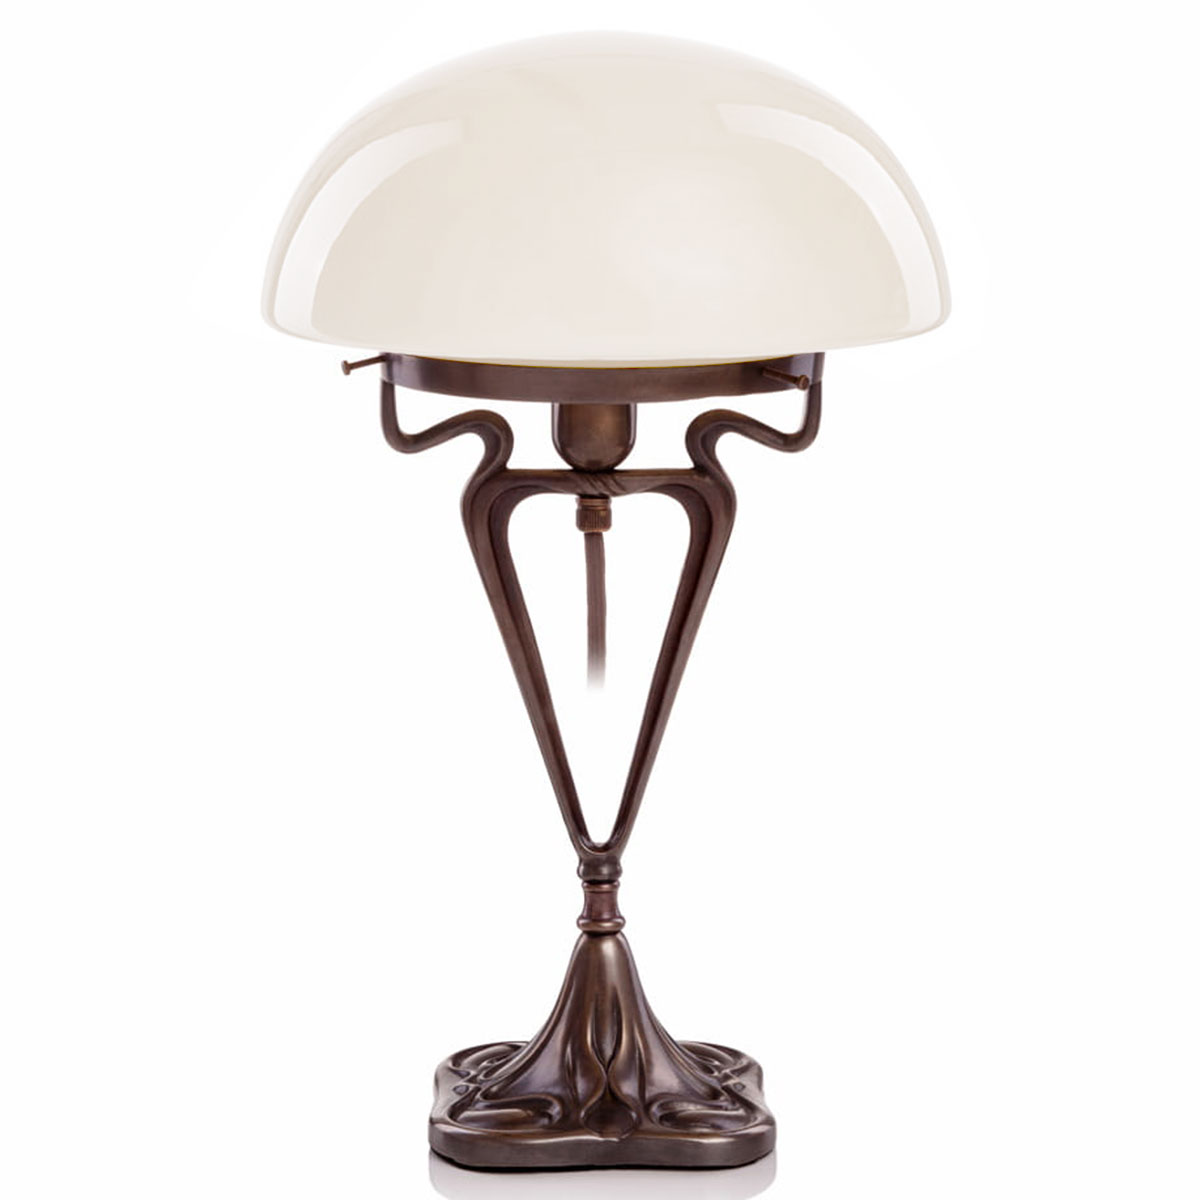 Jugendstil-Tischleuchte „Pilz“ mit verziertem Messingguss-Gestell: mit weiß glänzendem Opalglas